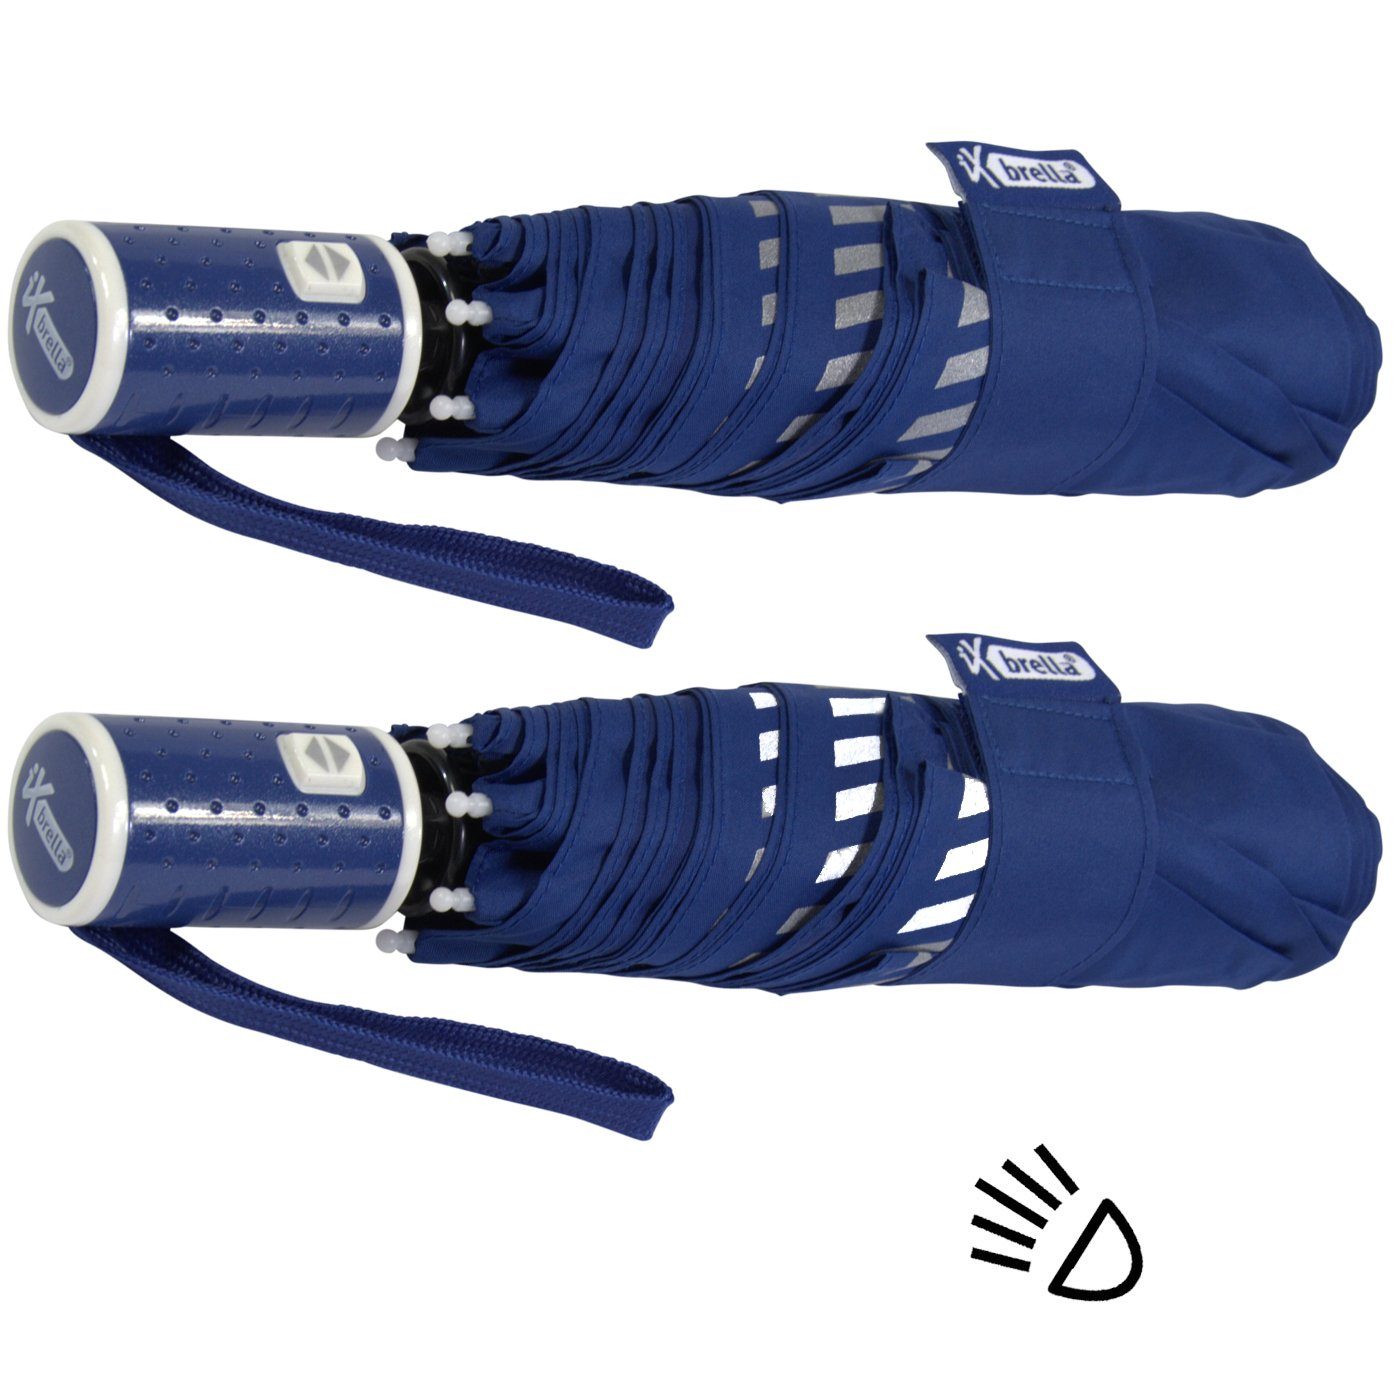 blau - Taschenregenschirm mit Sicherheit durch Kinderschirm reflektierend, Auf-Zu-Automatik, Reflex-Streifen iX-brella